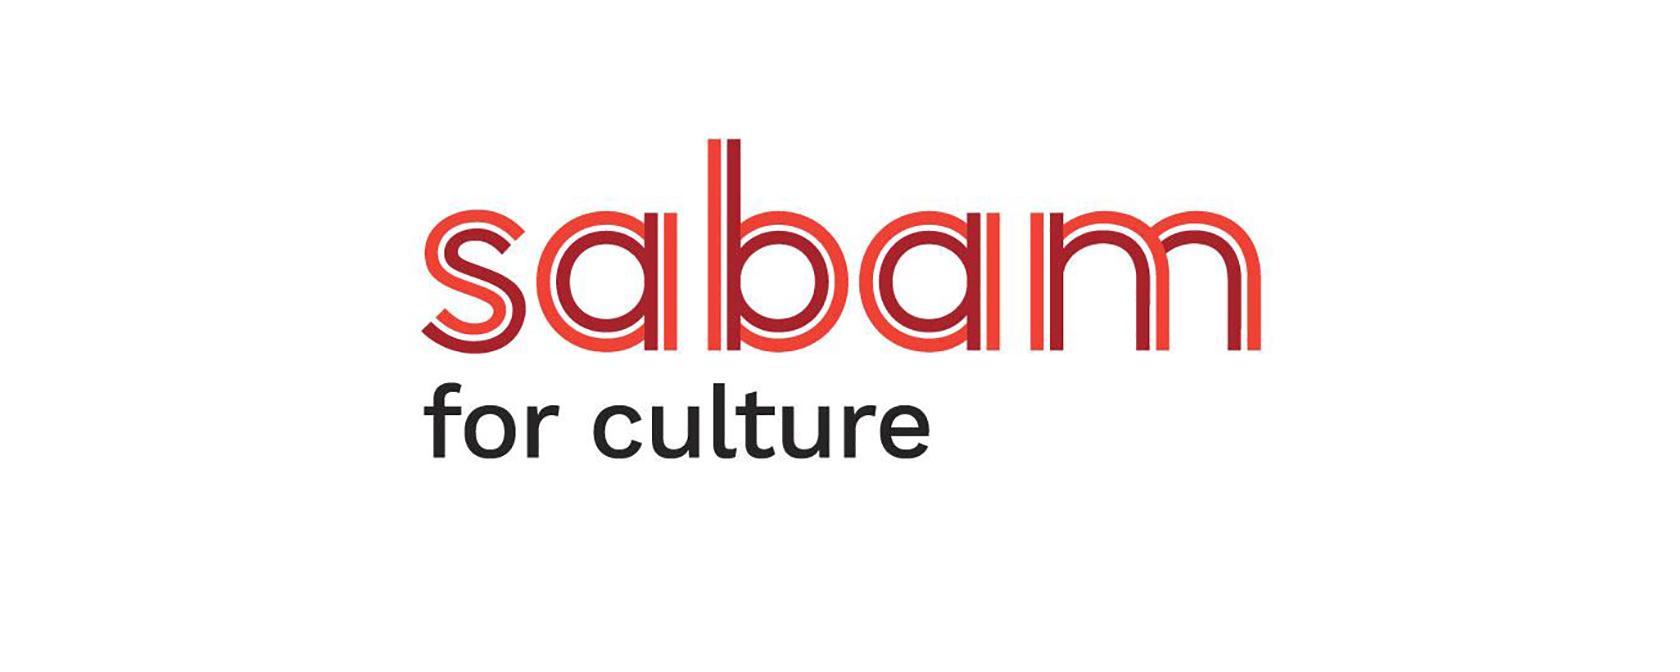 sabam logo met slogan 'for culture' er onder